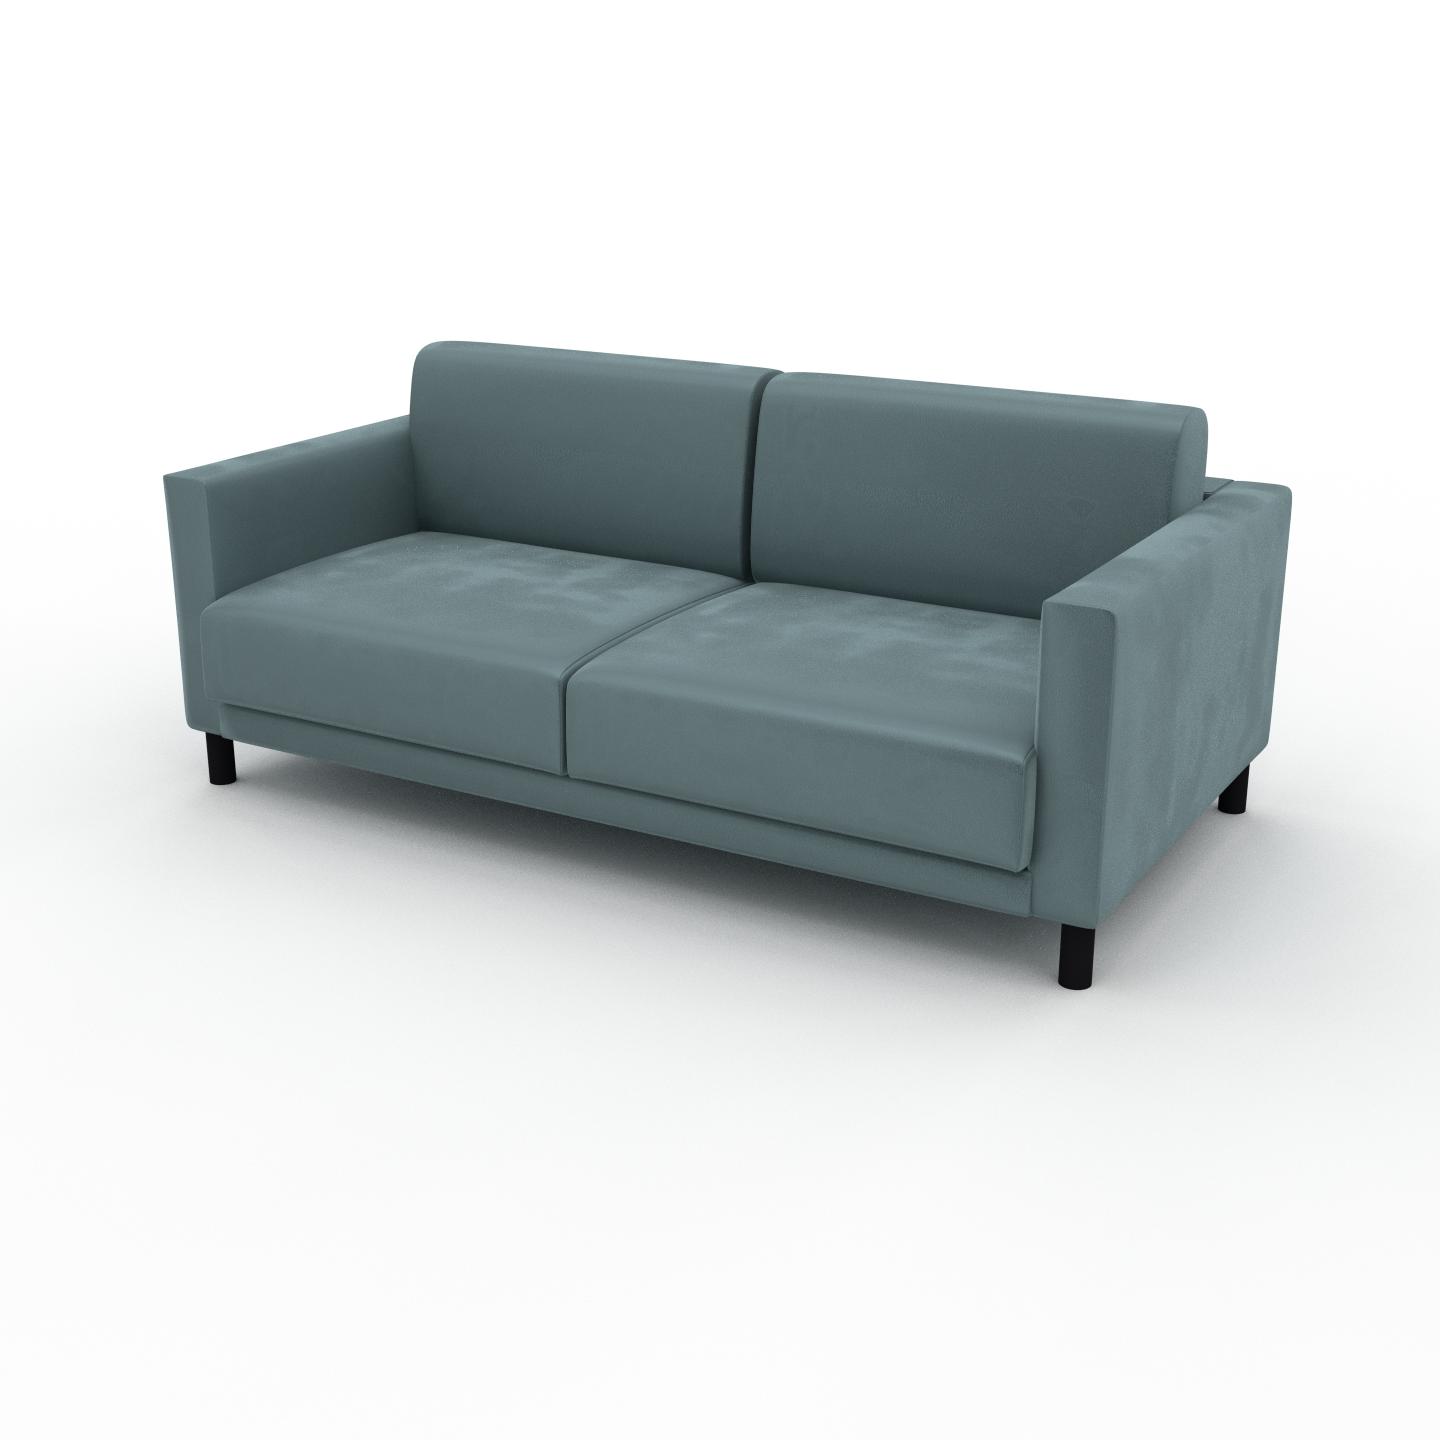 MYCS Sofa Samt Ozeangrün - Moderne Designer-Couch: Hochwertige Qualität, einzigartiges Design - 184 x 75 x 98 cm, Komplett anpassbar